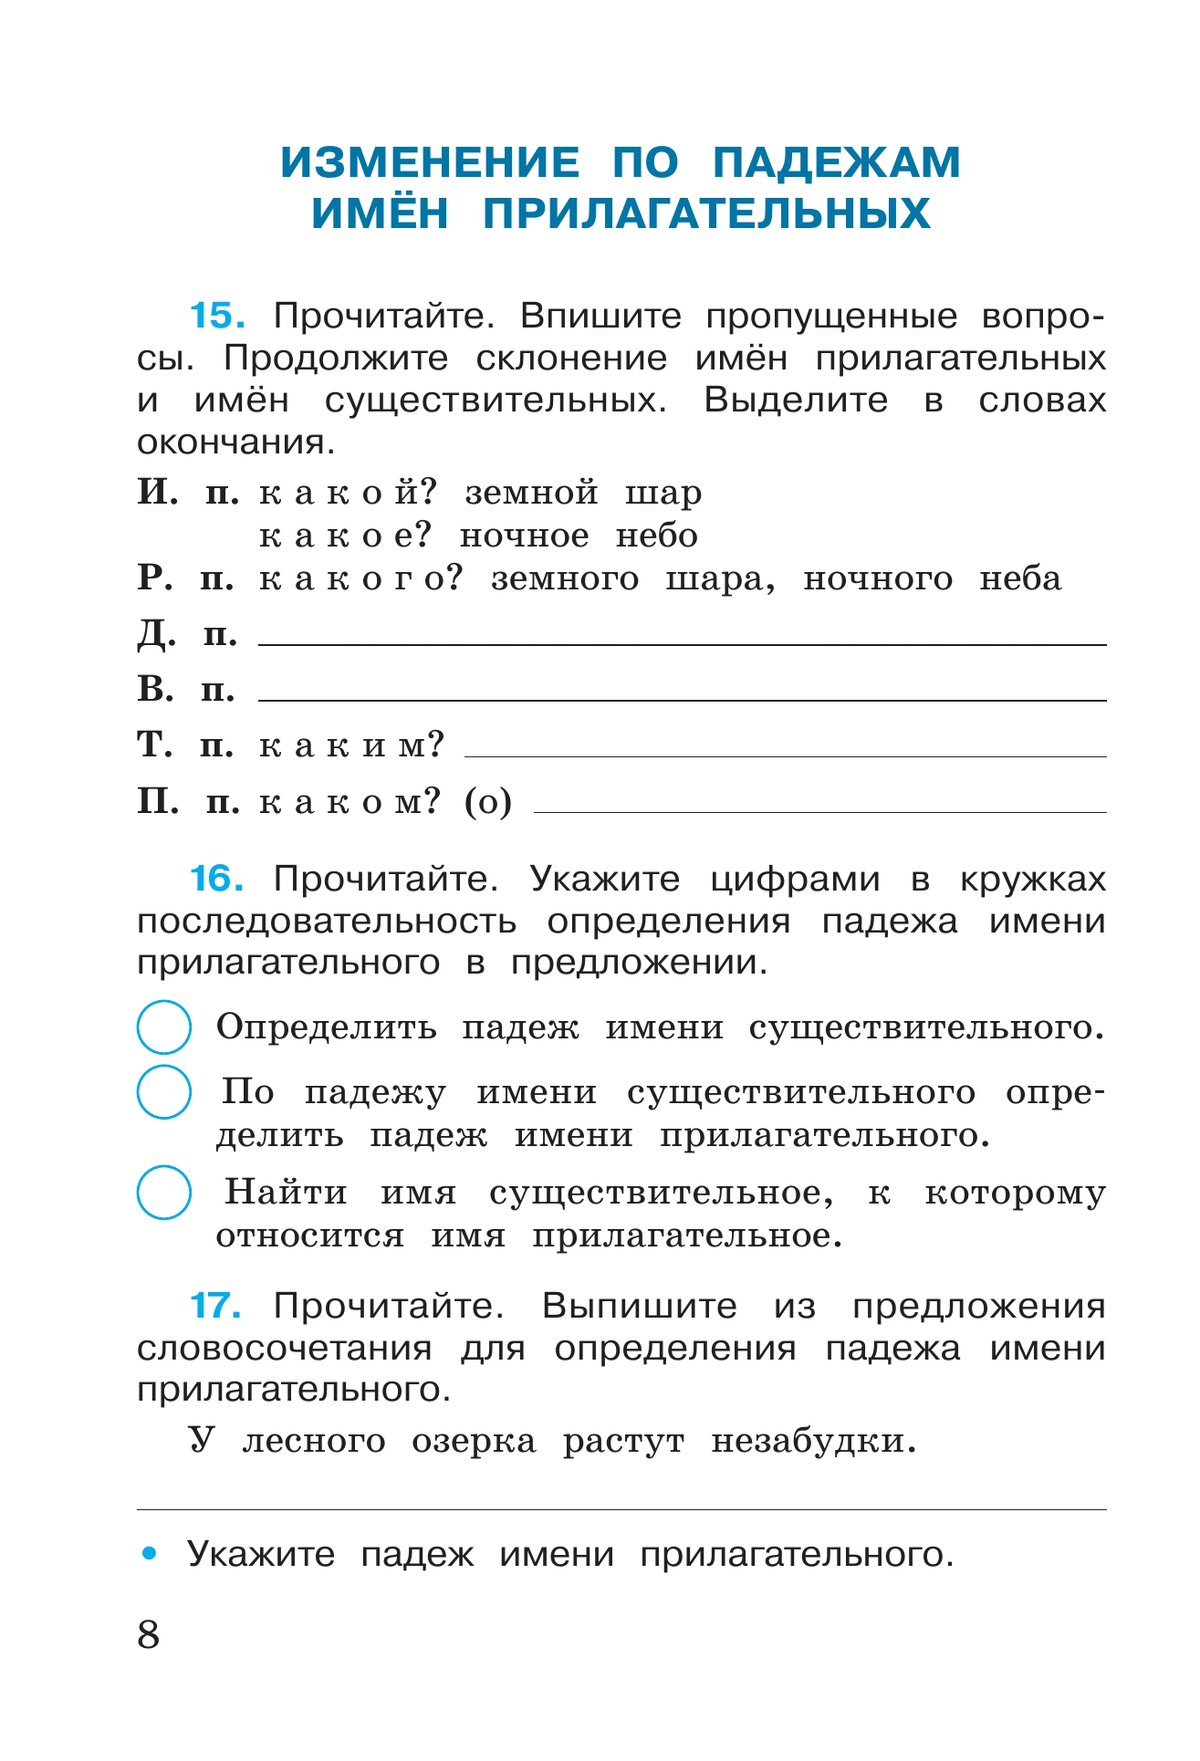 Русский язык. Рабочая тетрадь. 4 класс. В 2 частях. Часть 2 4